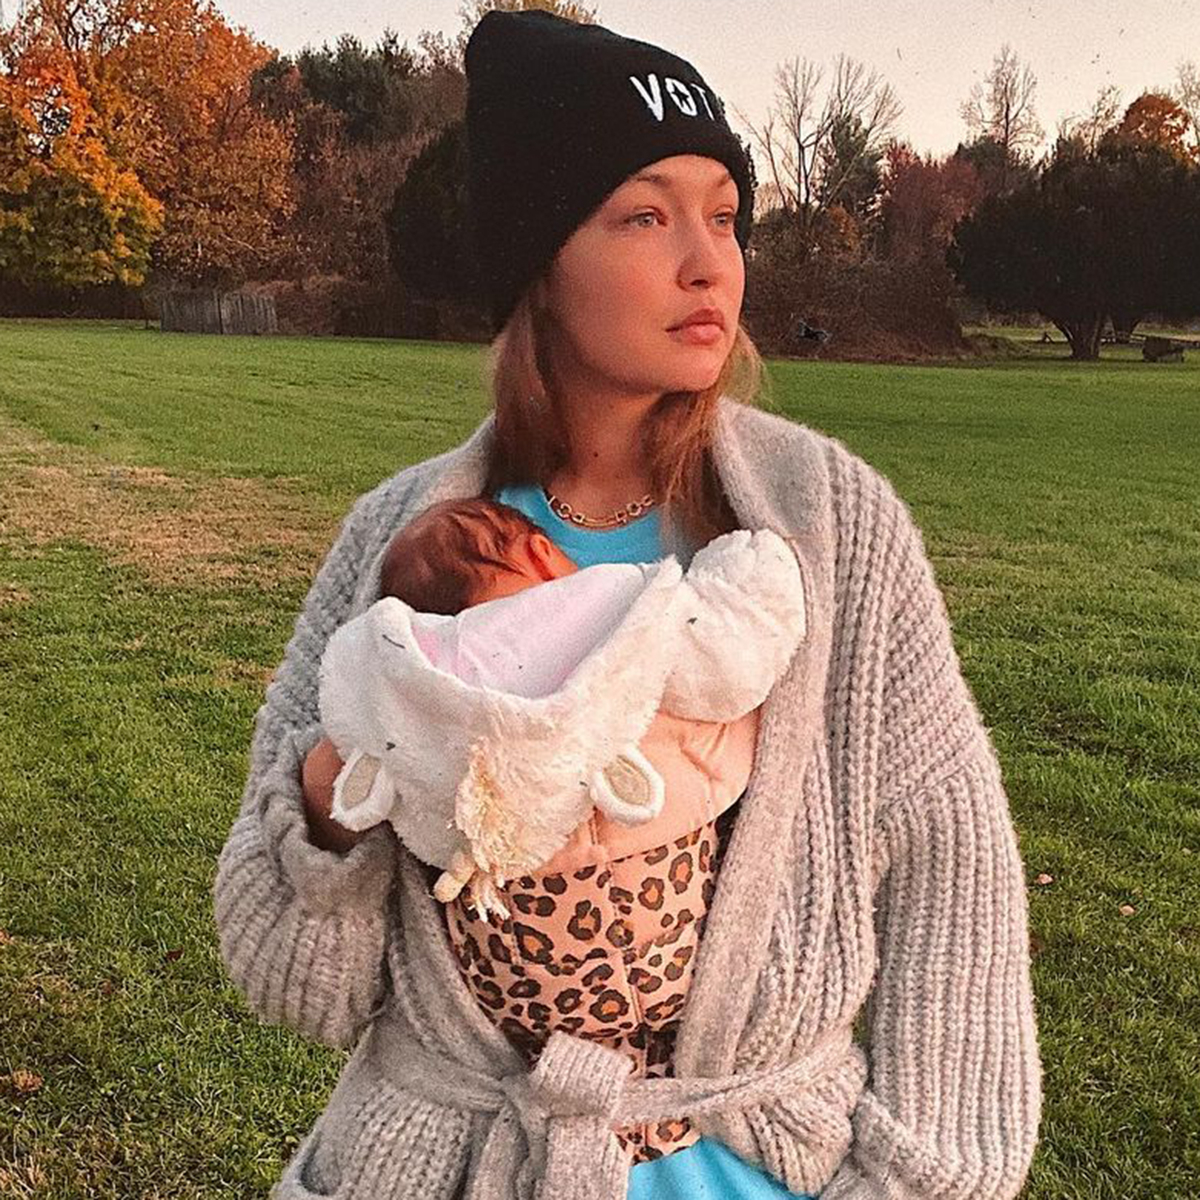 Gigi Hadid, Zayn Malik's Daughter's Baby Album: Family Photos